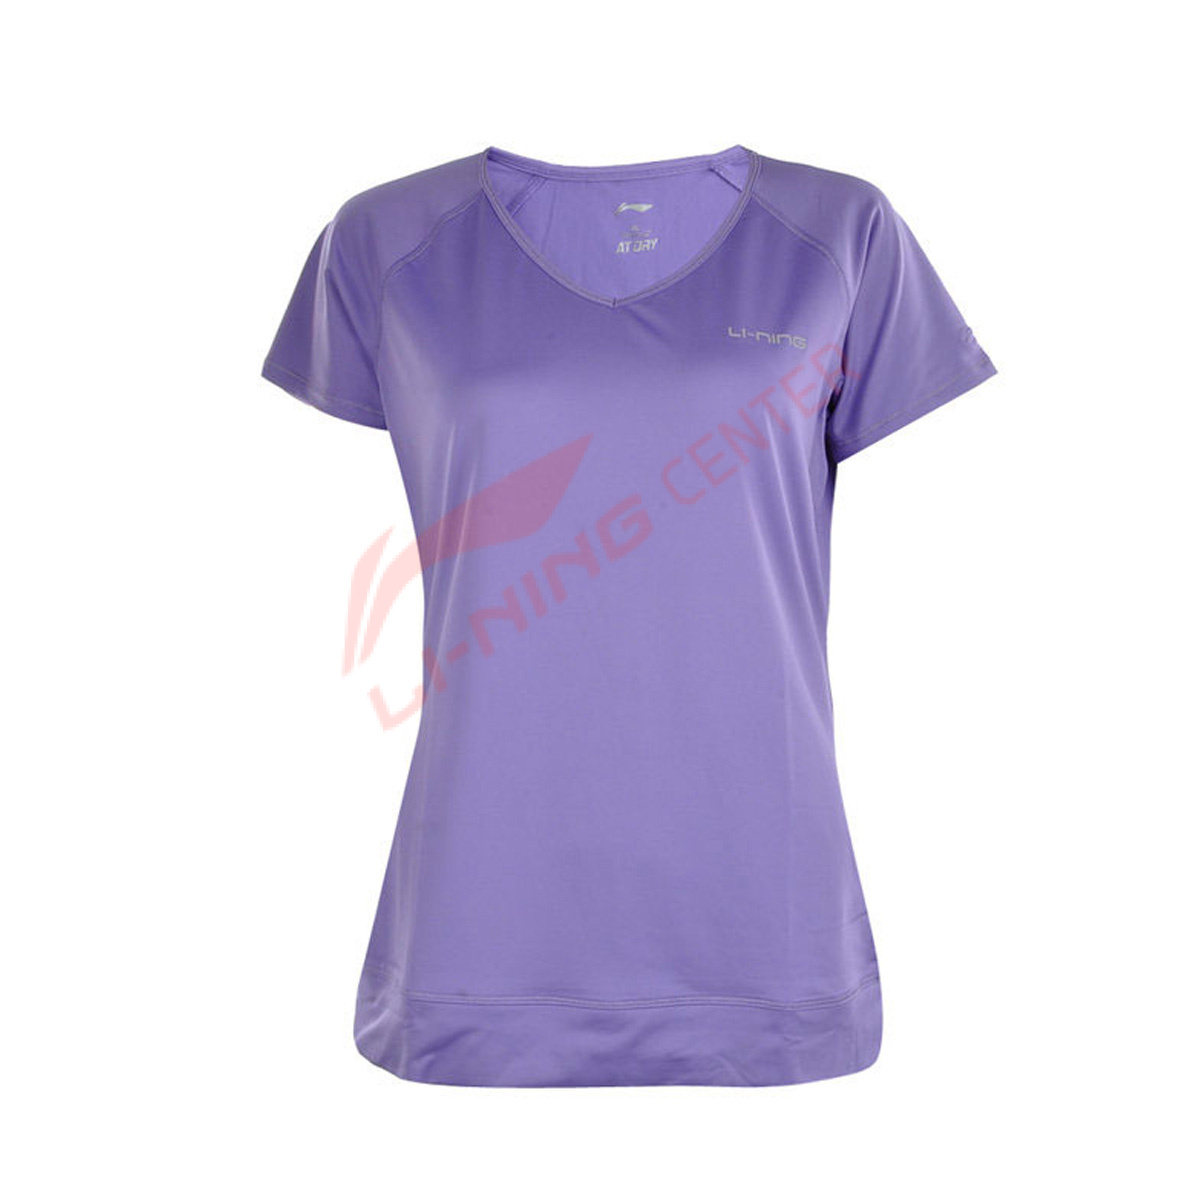 Женская футболка LI-NING ATSH246-6 (размер: S, M, XL)